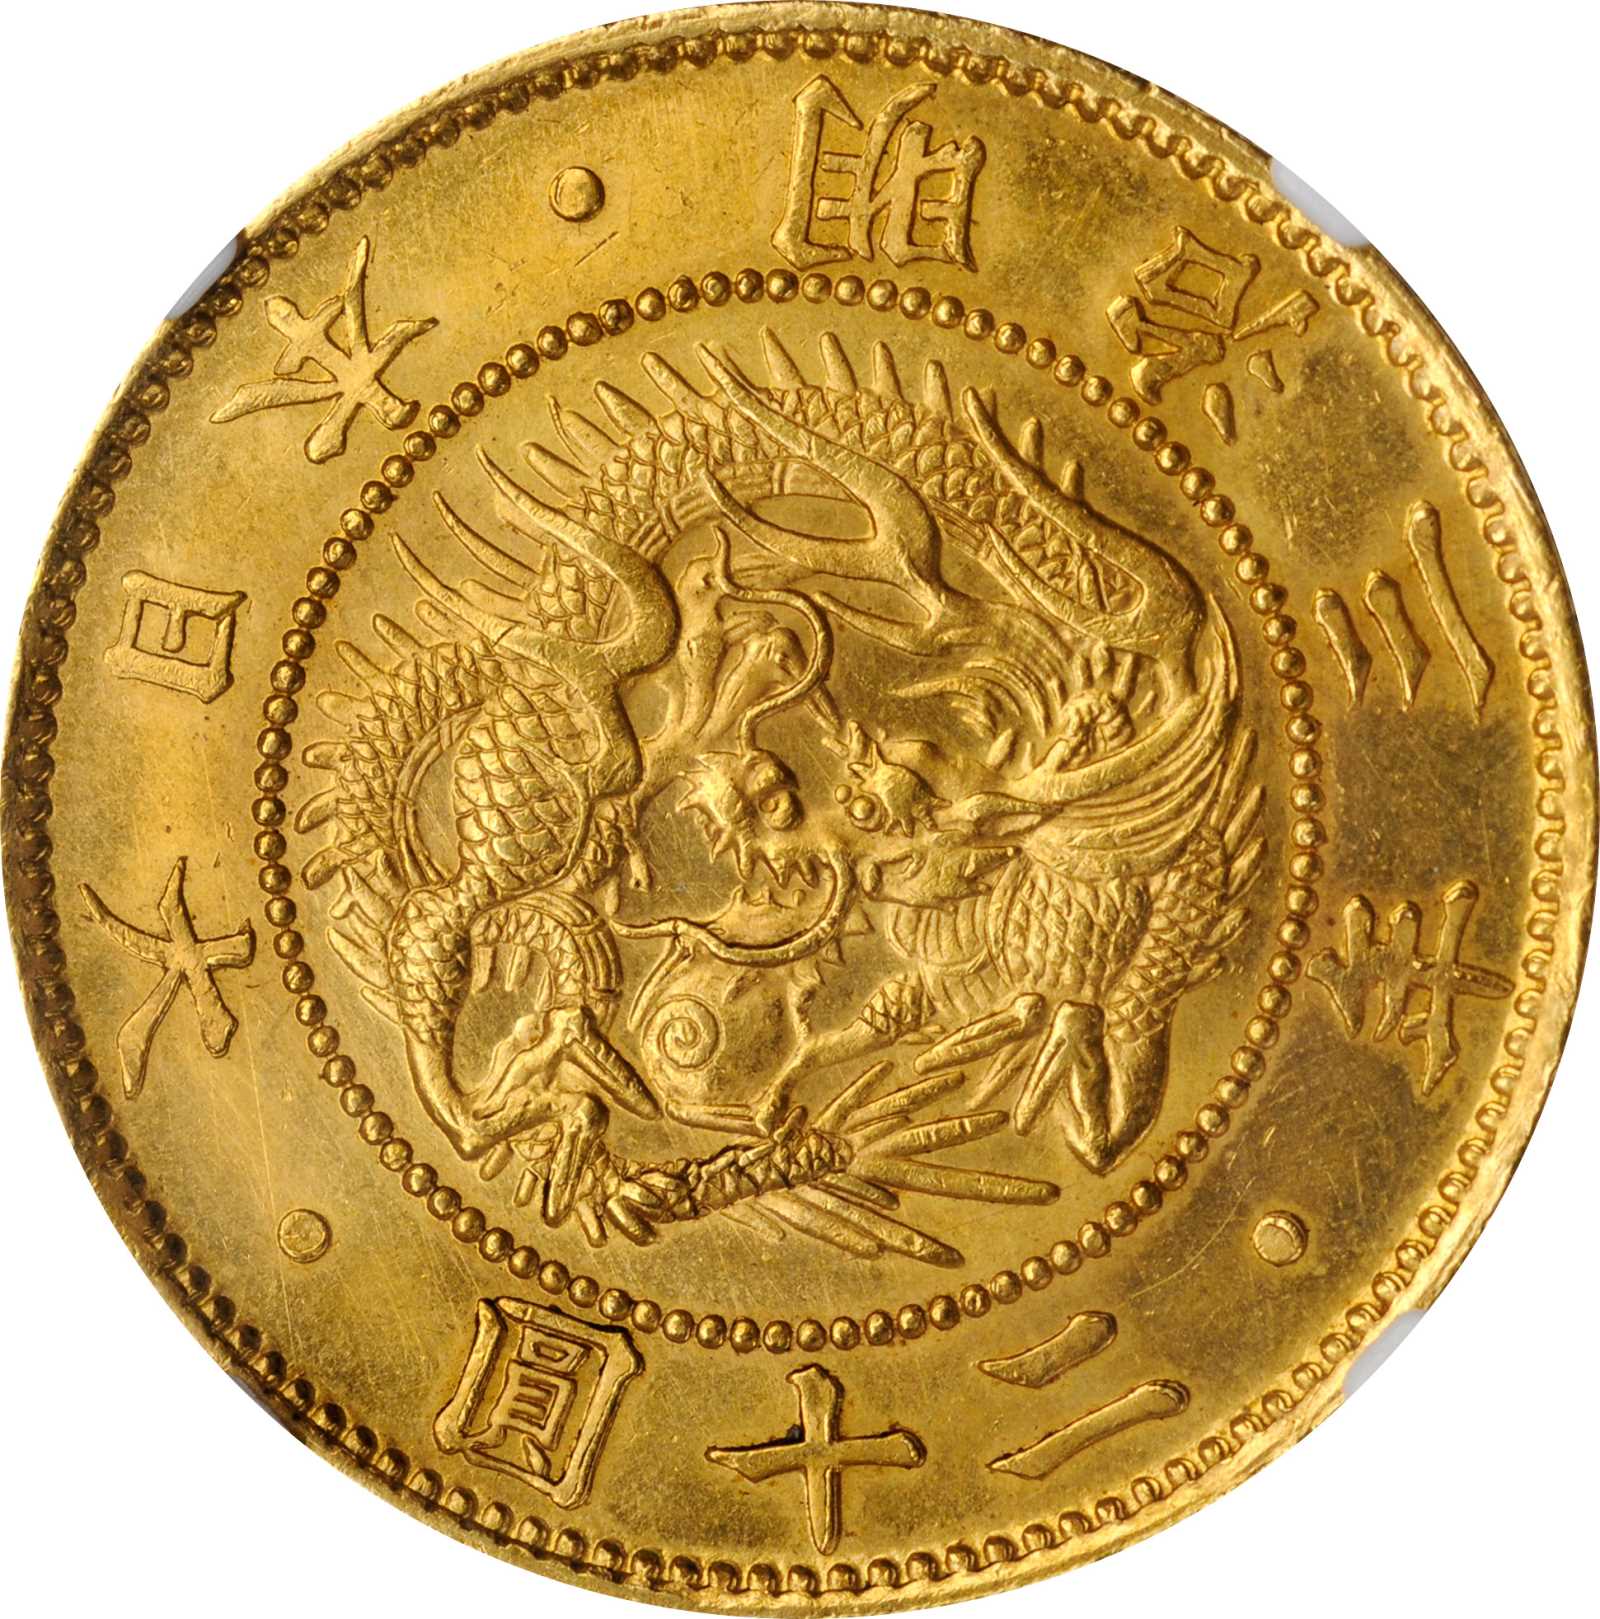 JAPAN. 20 Yen, Year 3 (1870). Mutsuhito (Meiji). NGC MS-64